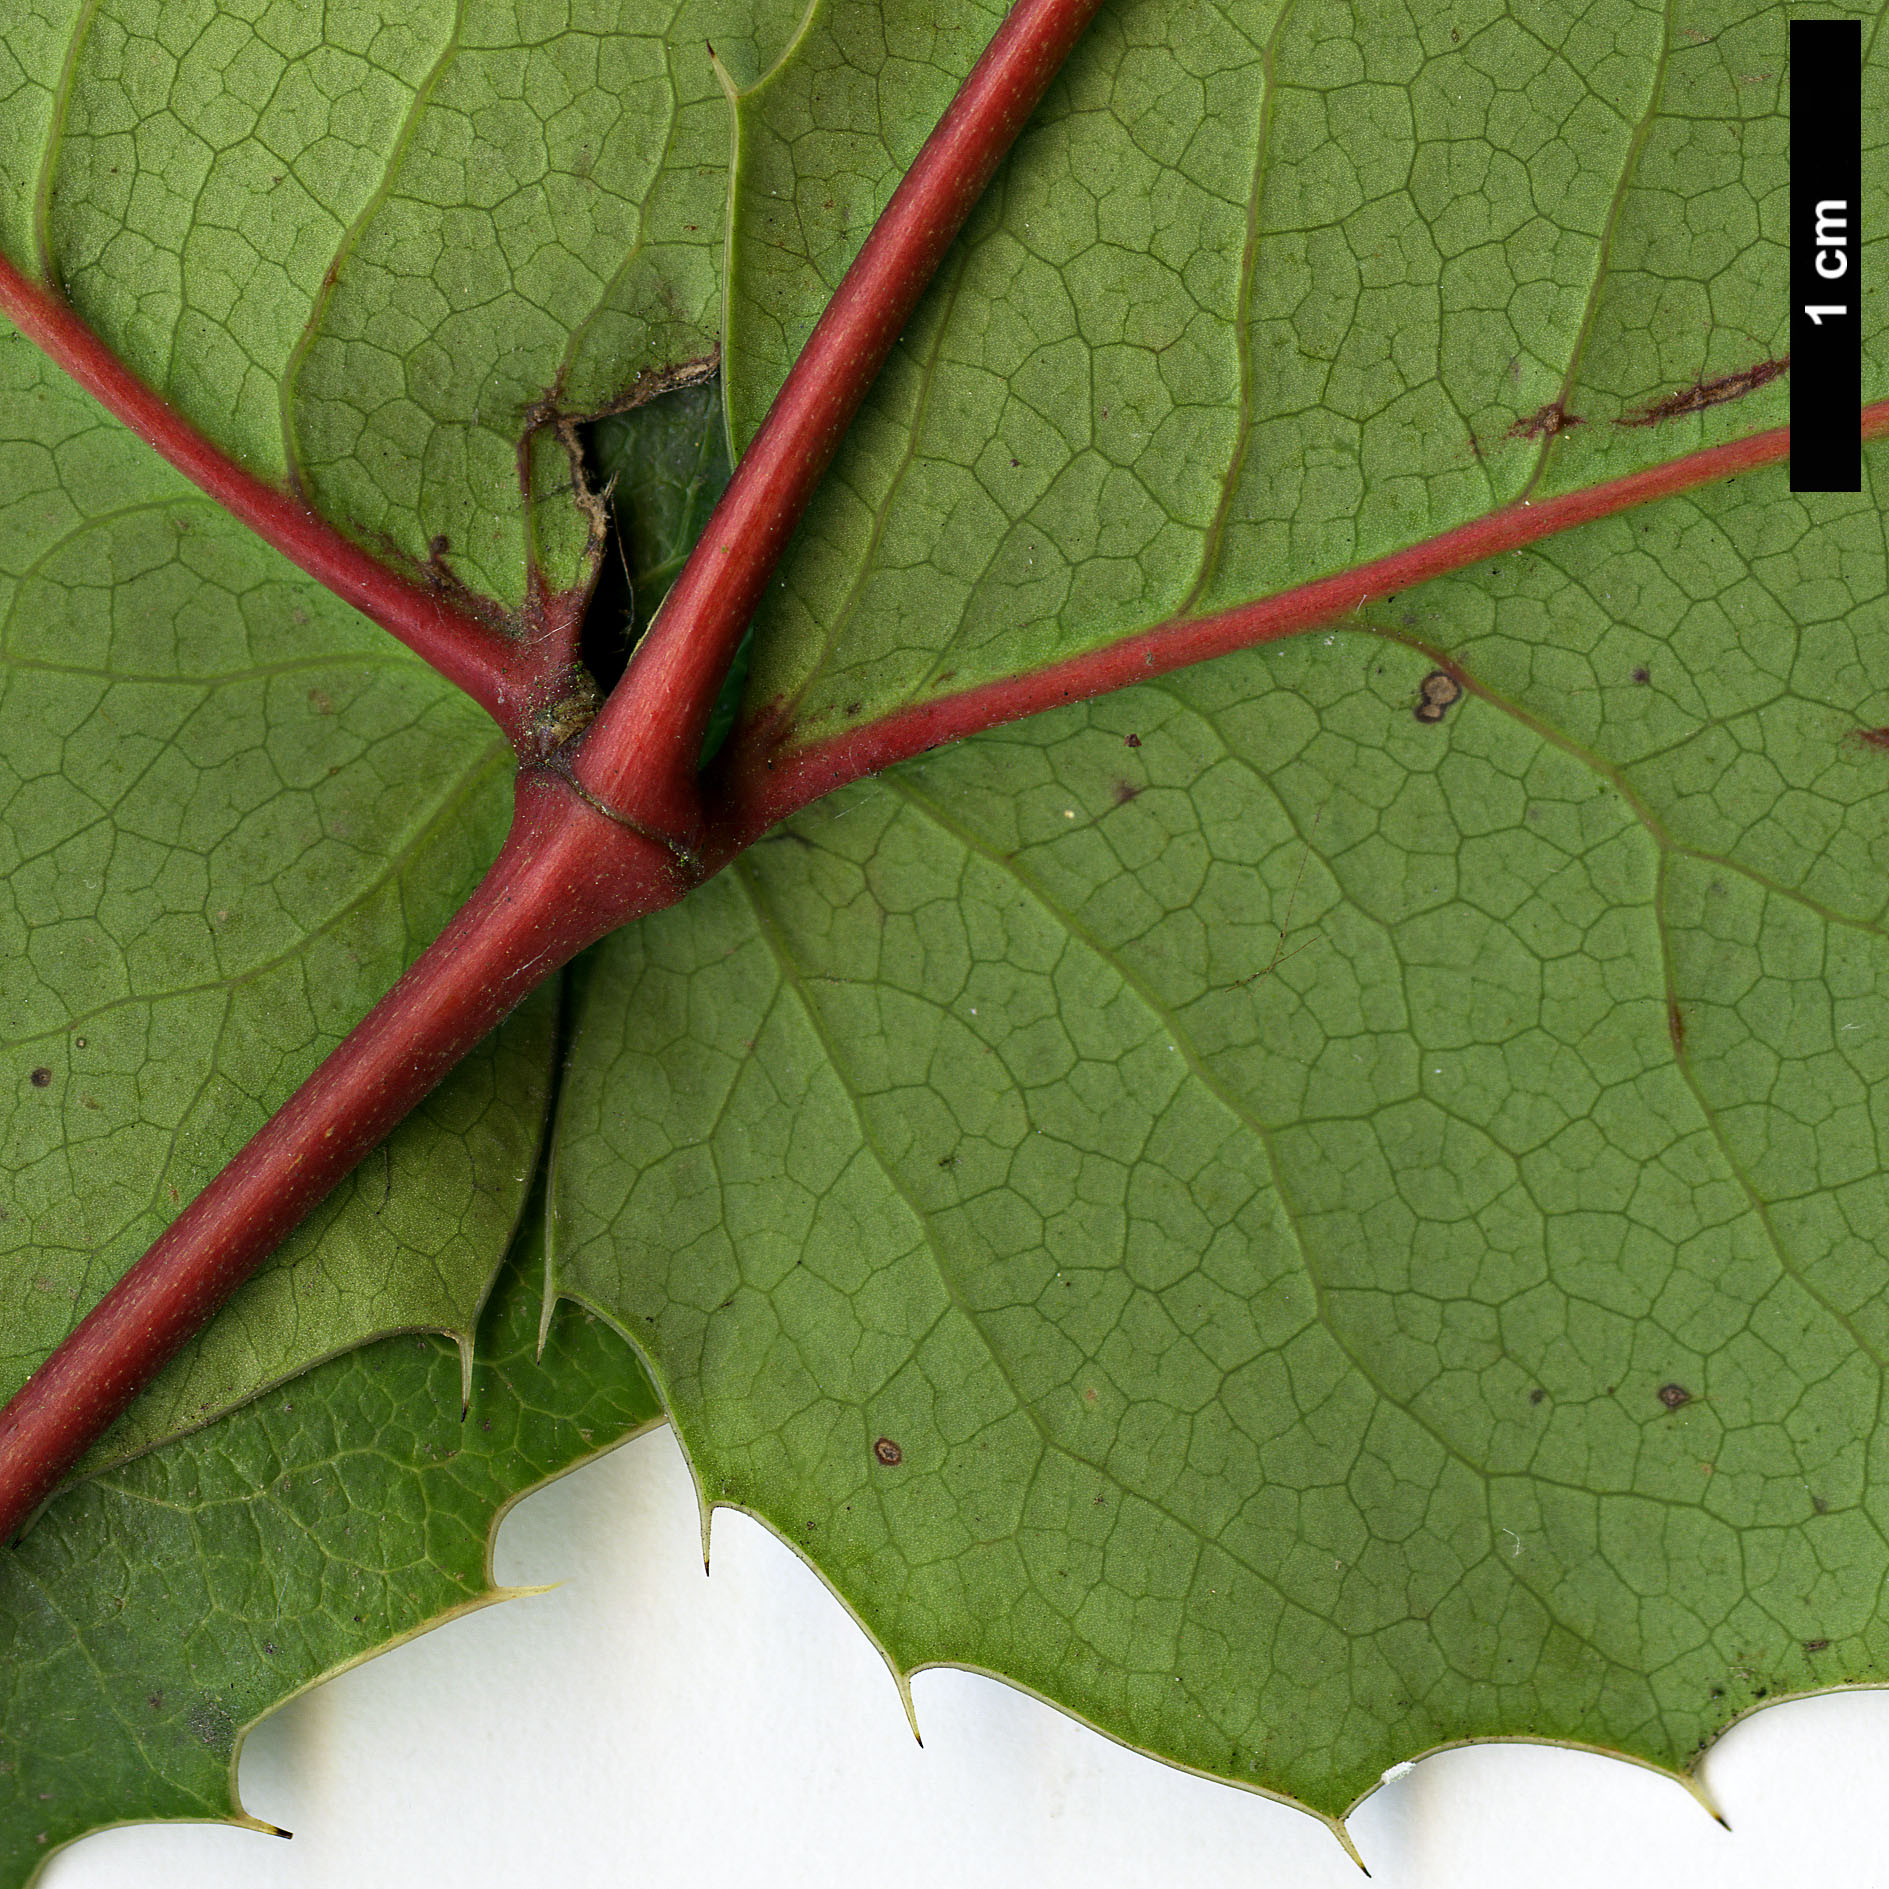 High resolution image: Family: Berberidaceae - Genus: Mahonia - Taxon: repens